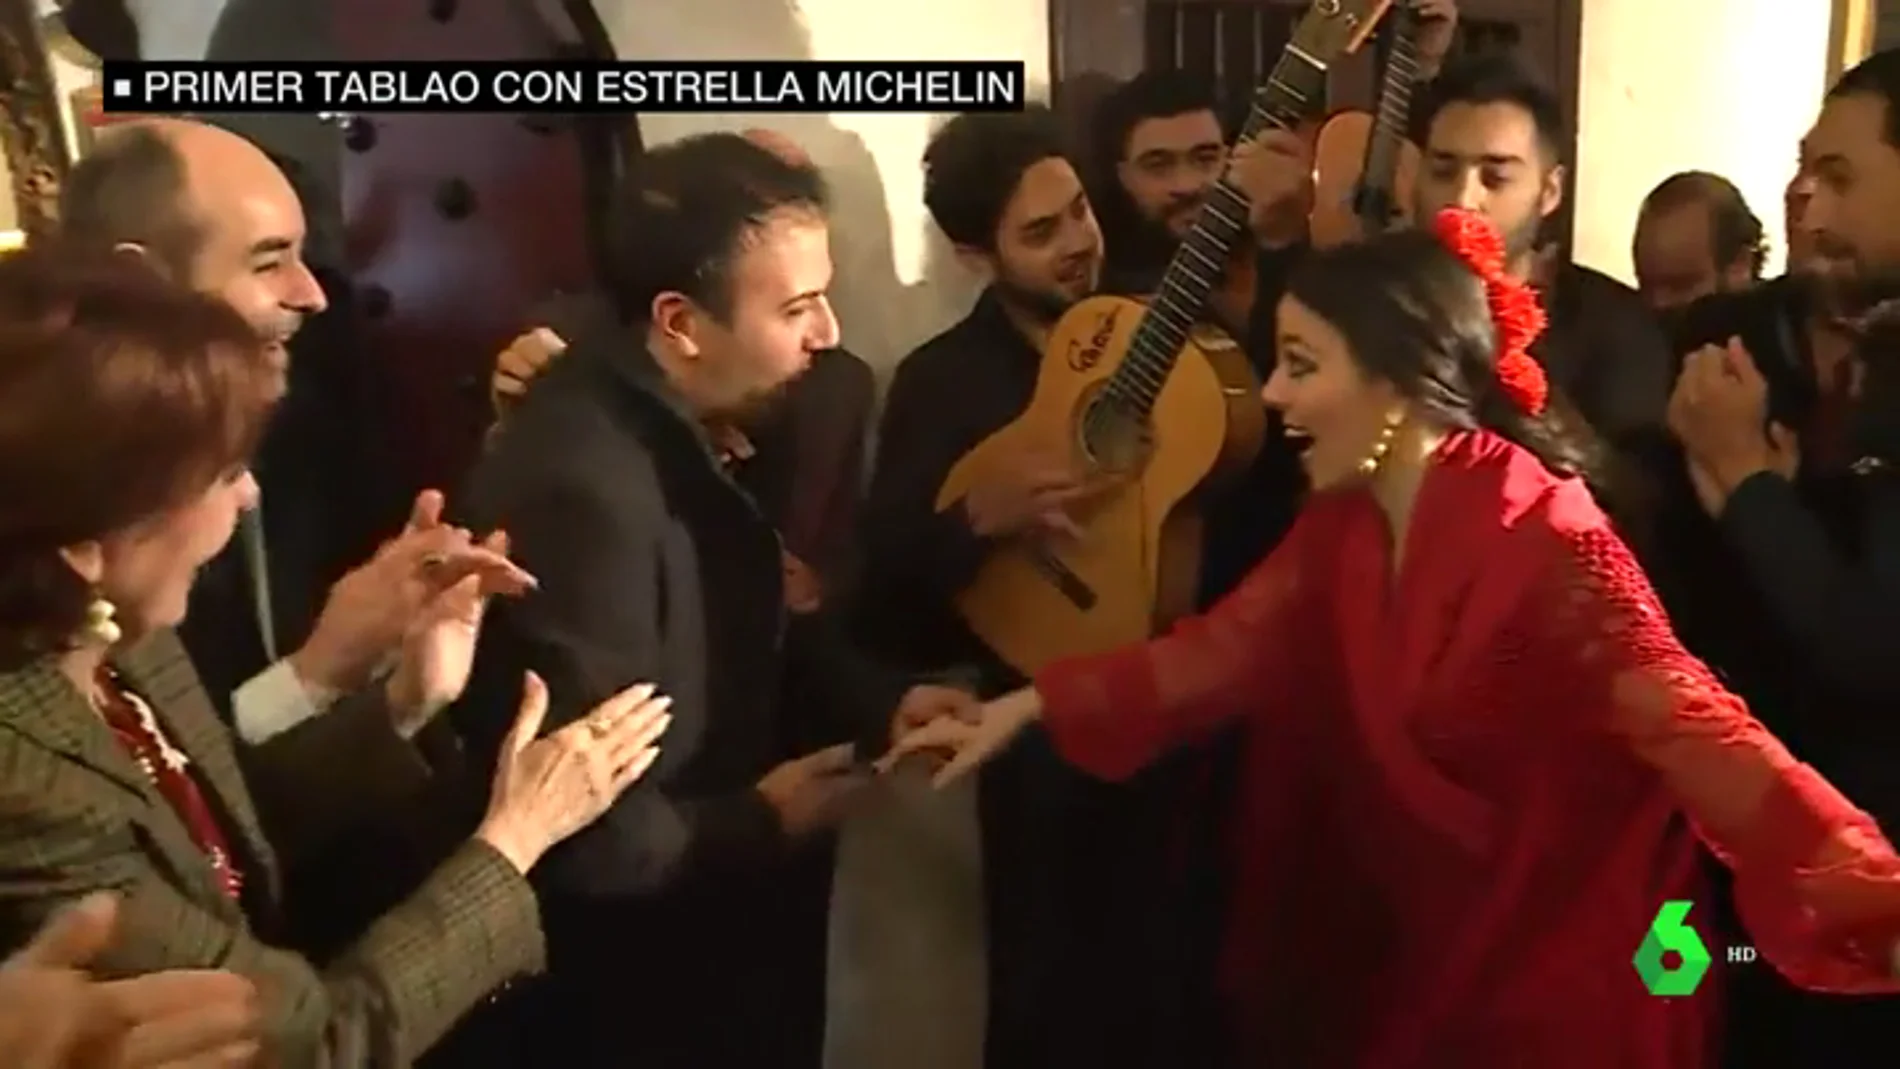 El Corral de la Morería se convierte en el primer tablao flamenco con una estrella Michelín